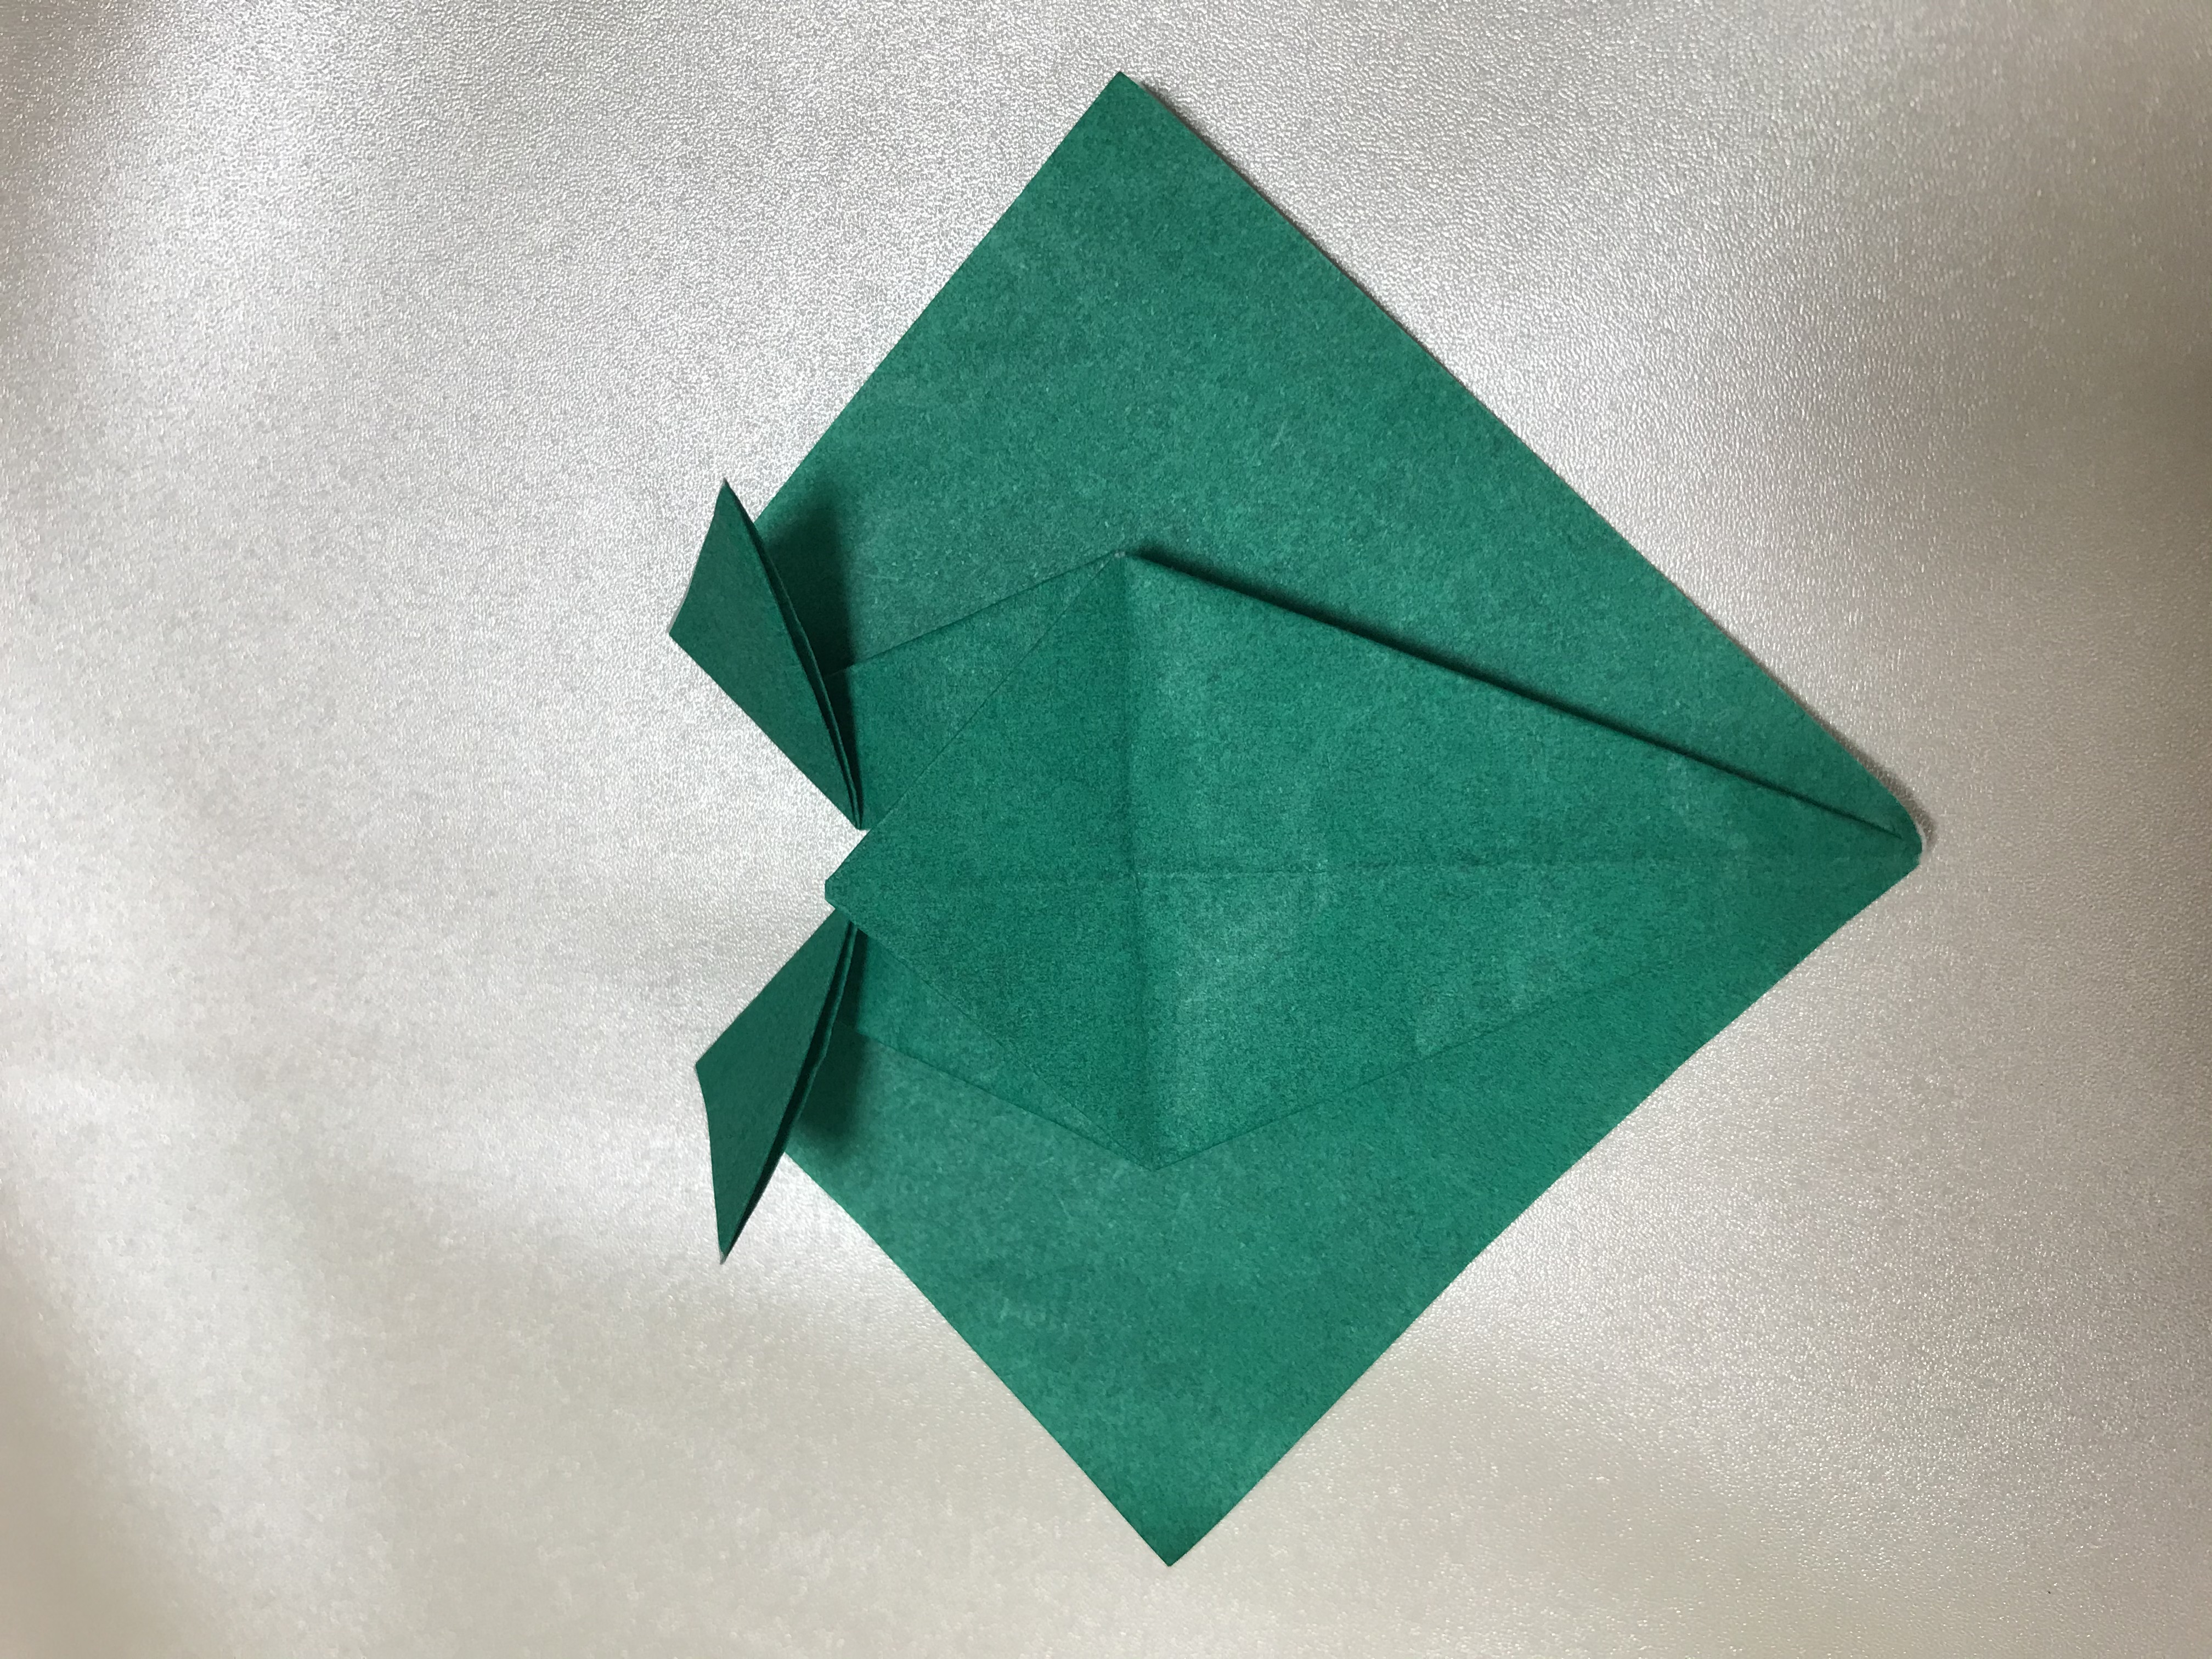 折り紙でカエルを作る方法 リアルなカエルの折り方を図解します よしハック 主婦のライフハック